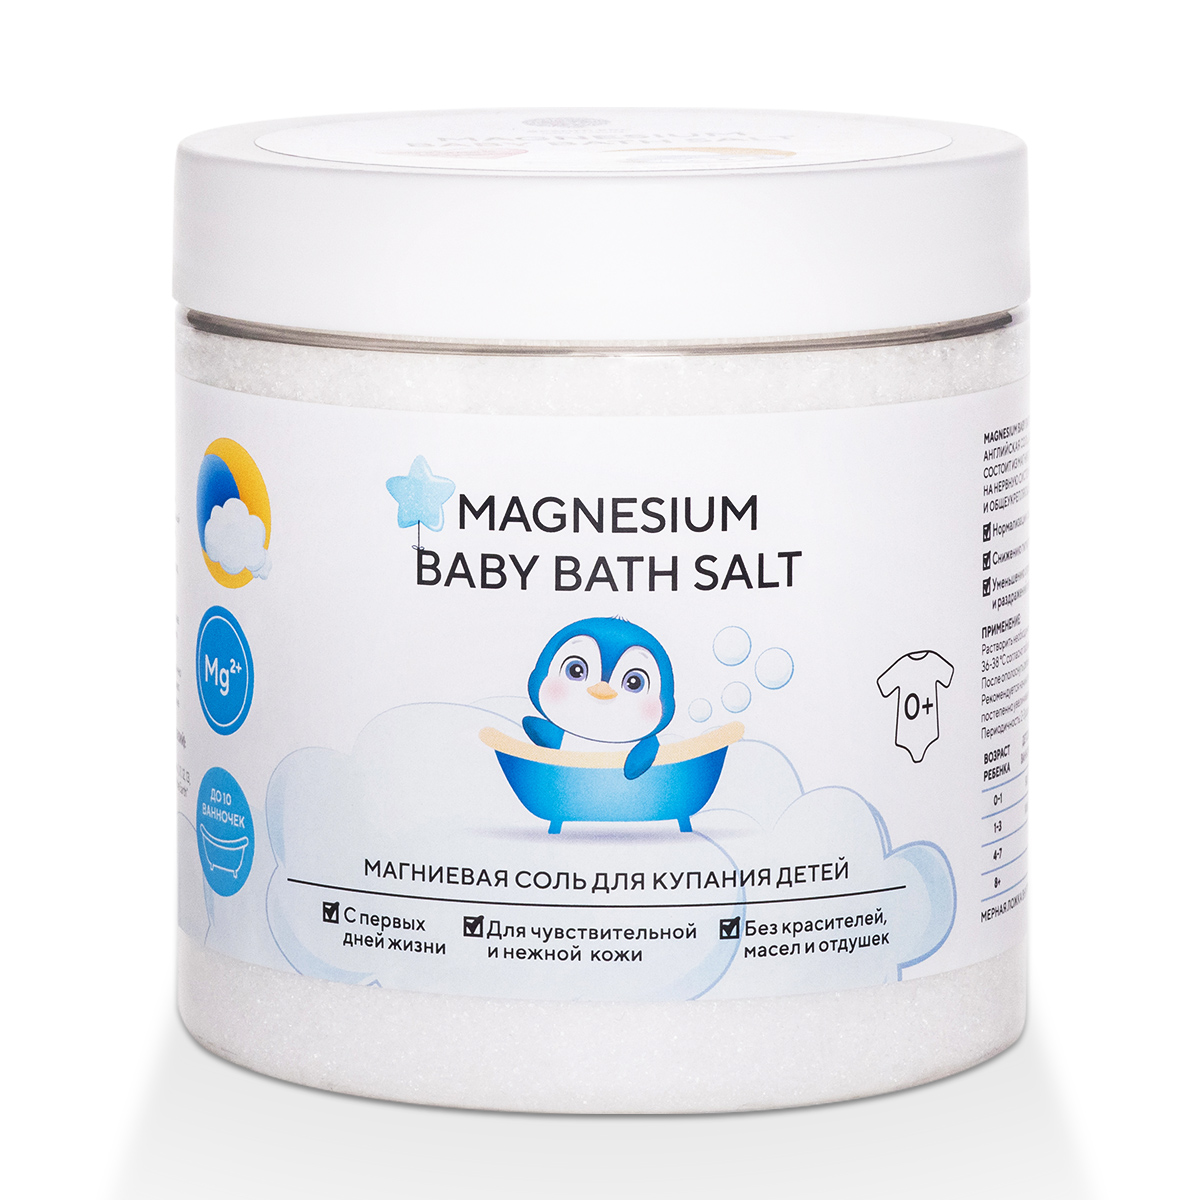 Соль магниевая Magnesium Baby Bath Salt для купания детей 500 г соль магниевая для ванн сольздрав здоровый сон 800 г